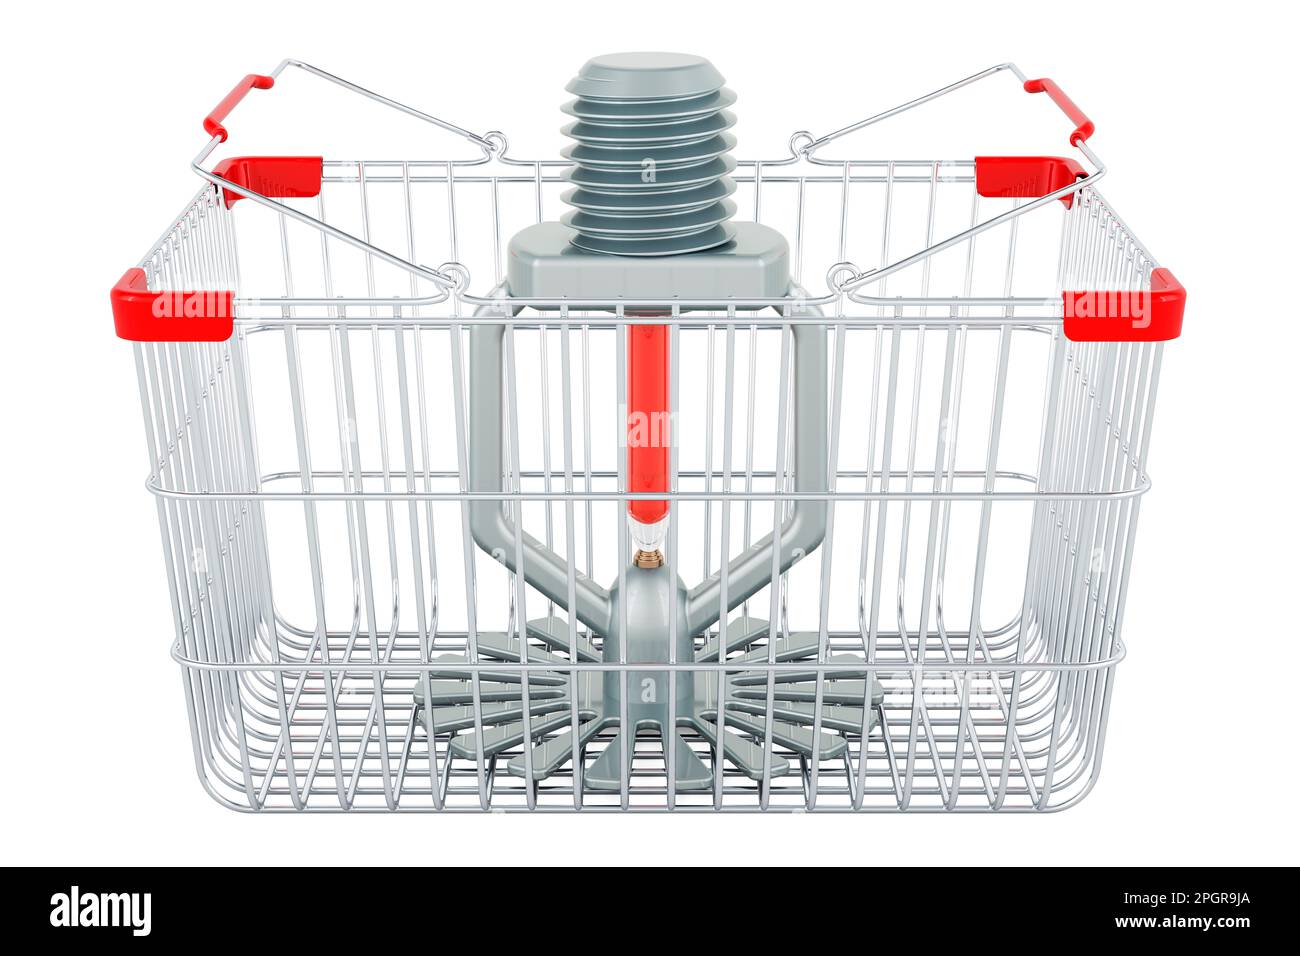 Fire Sprinkler inside shopping basket, 3D rendering isolated on white background Stock Photo